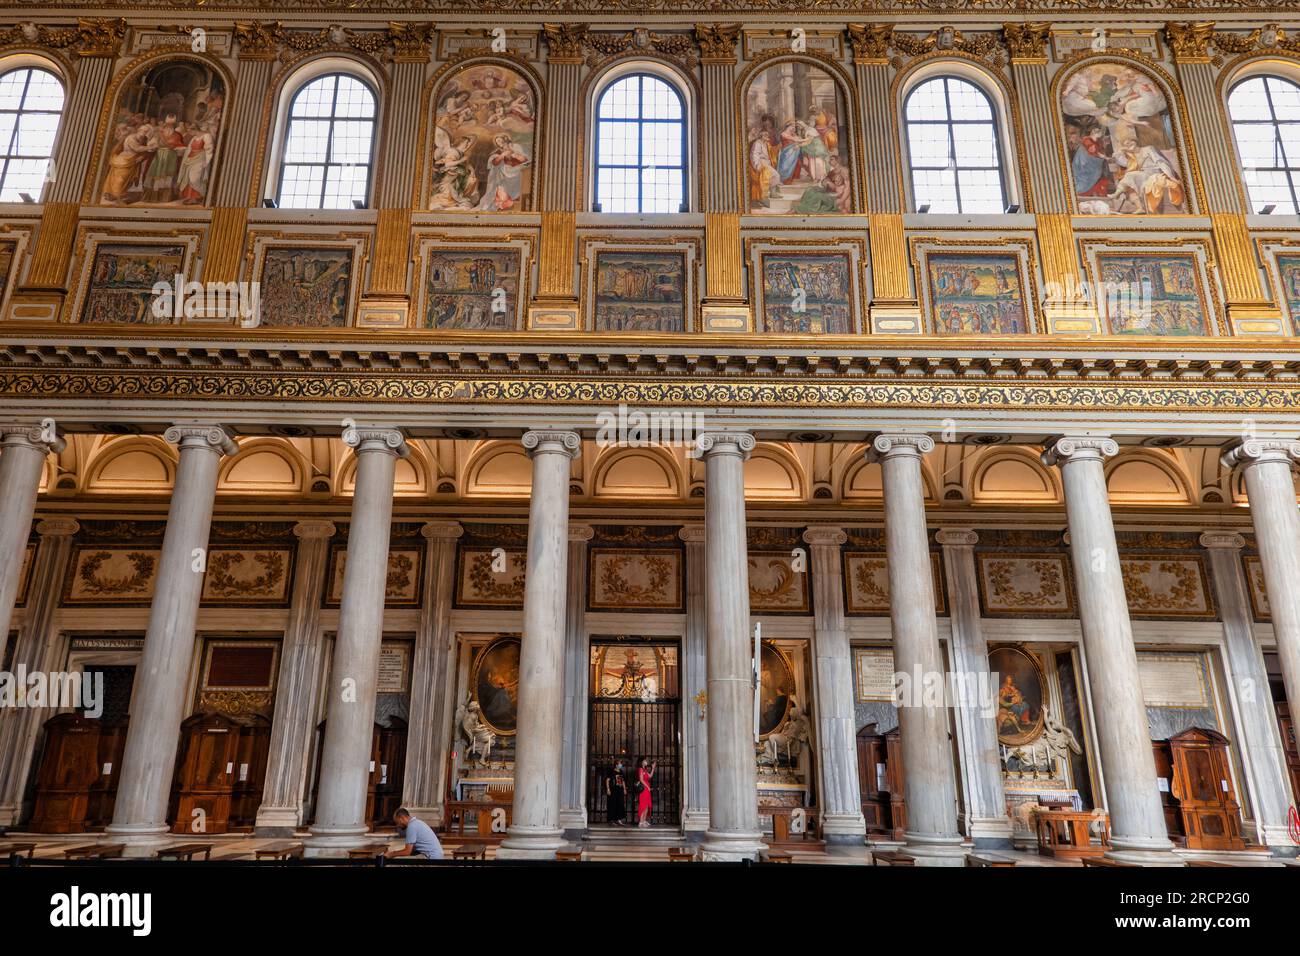 Rome, Italie, Basilique Sainte Marie majeure (Basilica di Santa Maria Maggiore) intérieur, colonnade de nef avec colonnes ioniques. Banque D'Images